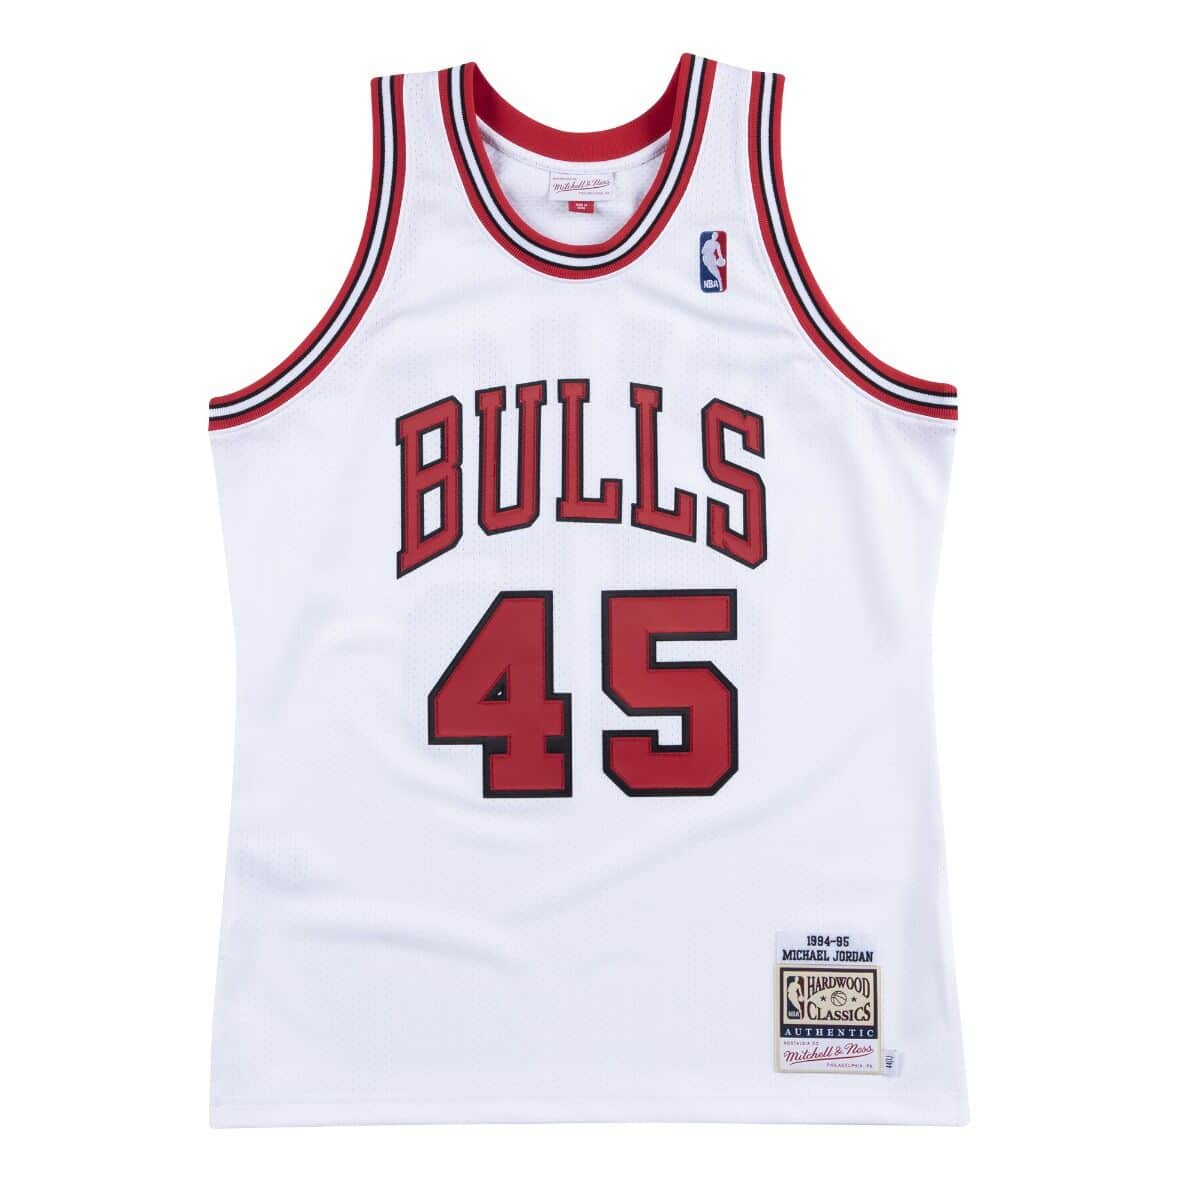 Authentic Jersey Chicago Bulls 1994-95 Michael Jordans